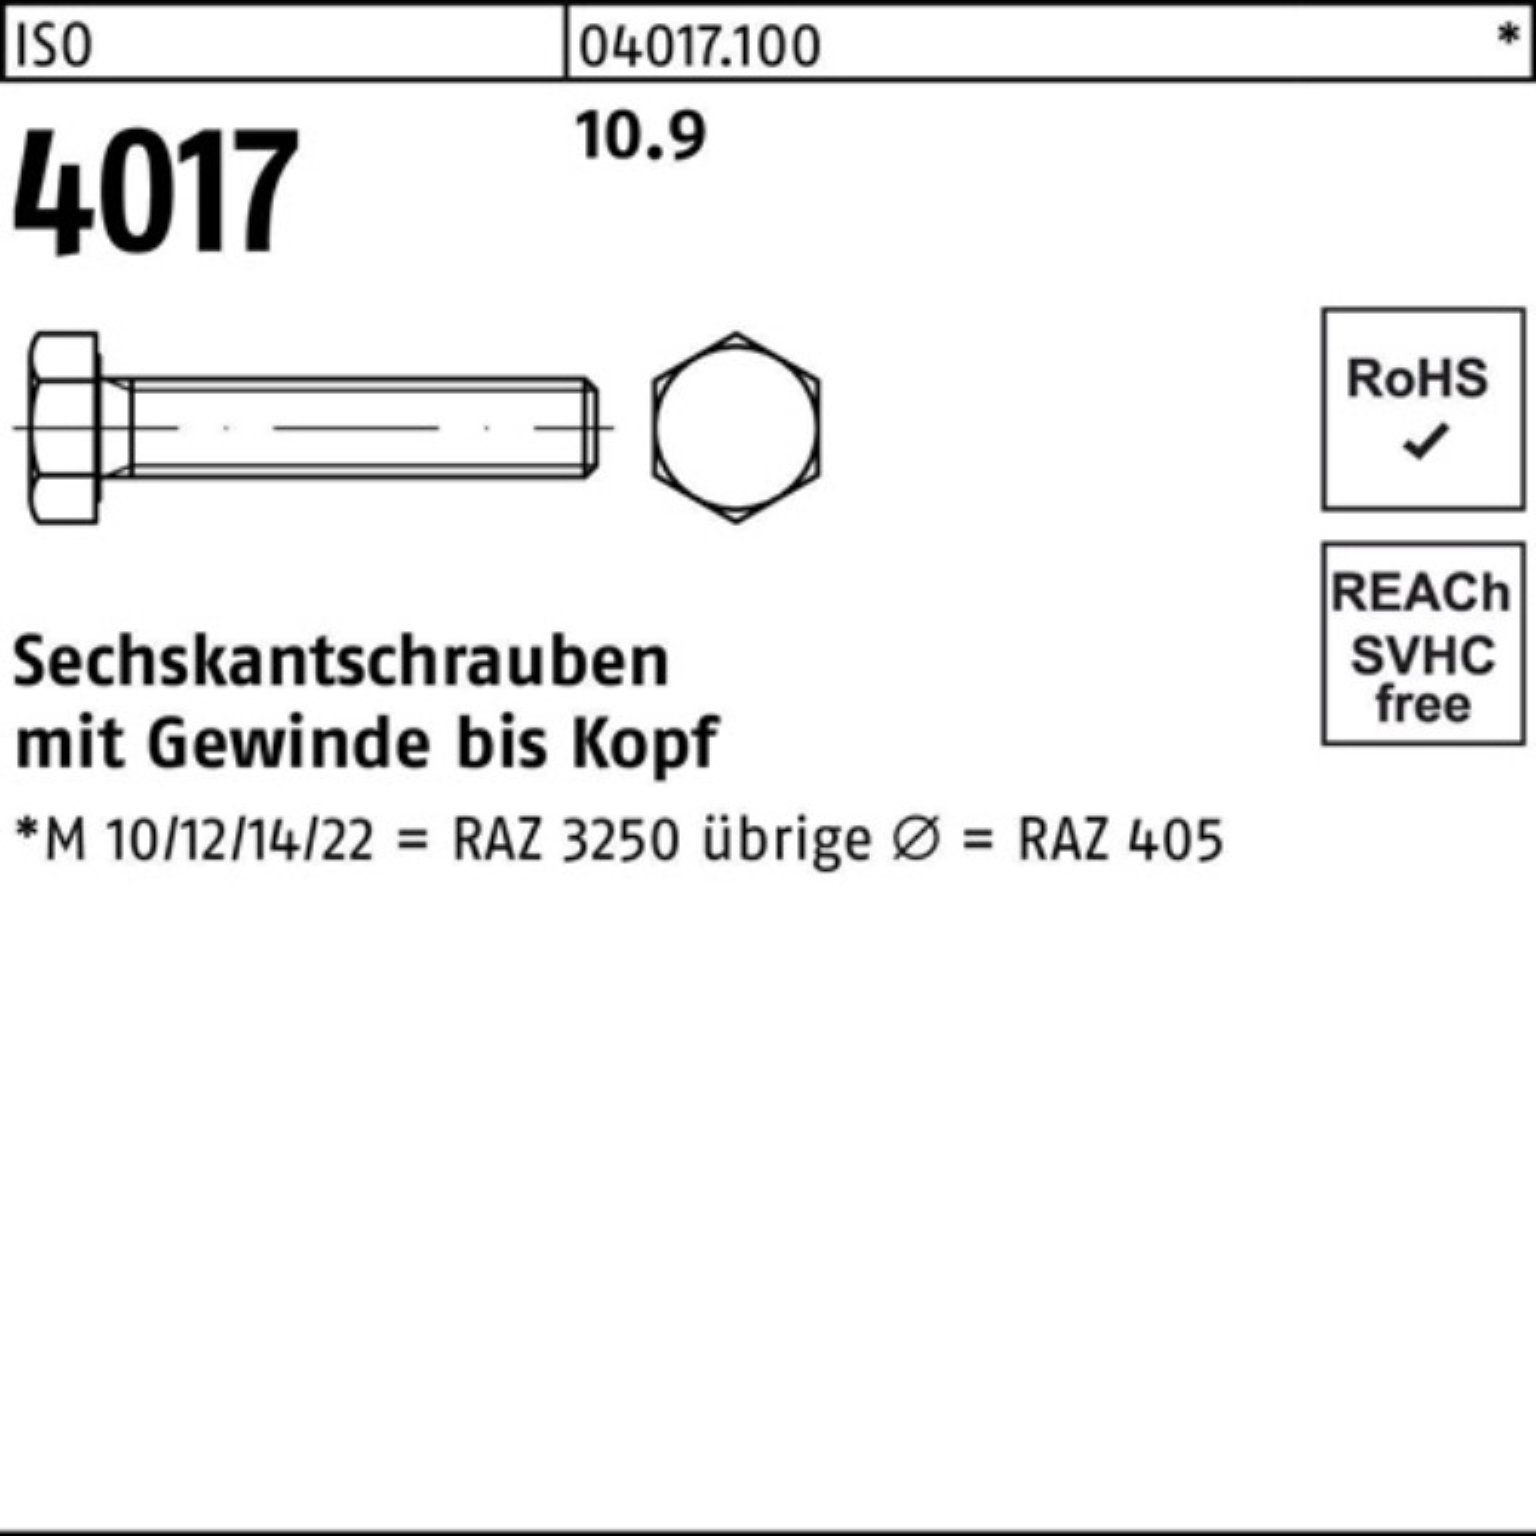 Pack 75 Sechskantschraube 4 ISO Stück ISO Sechskantschraube 100er Bufab M10x 4017 100 VG 10.9